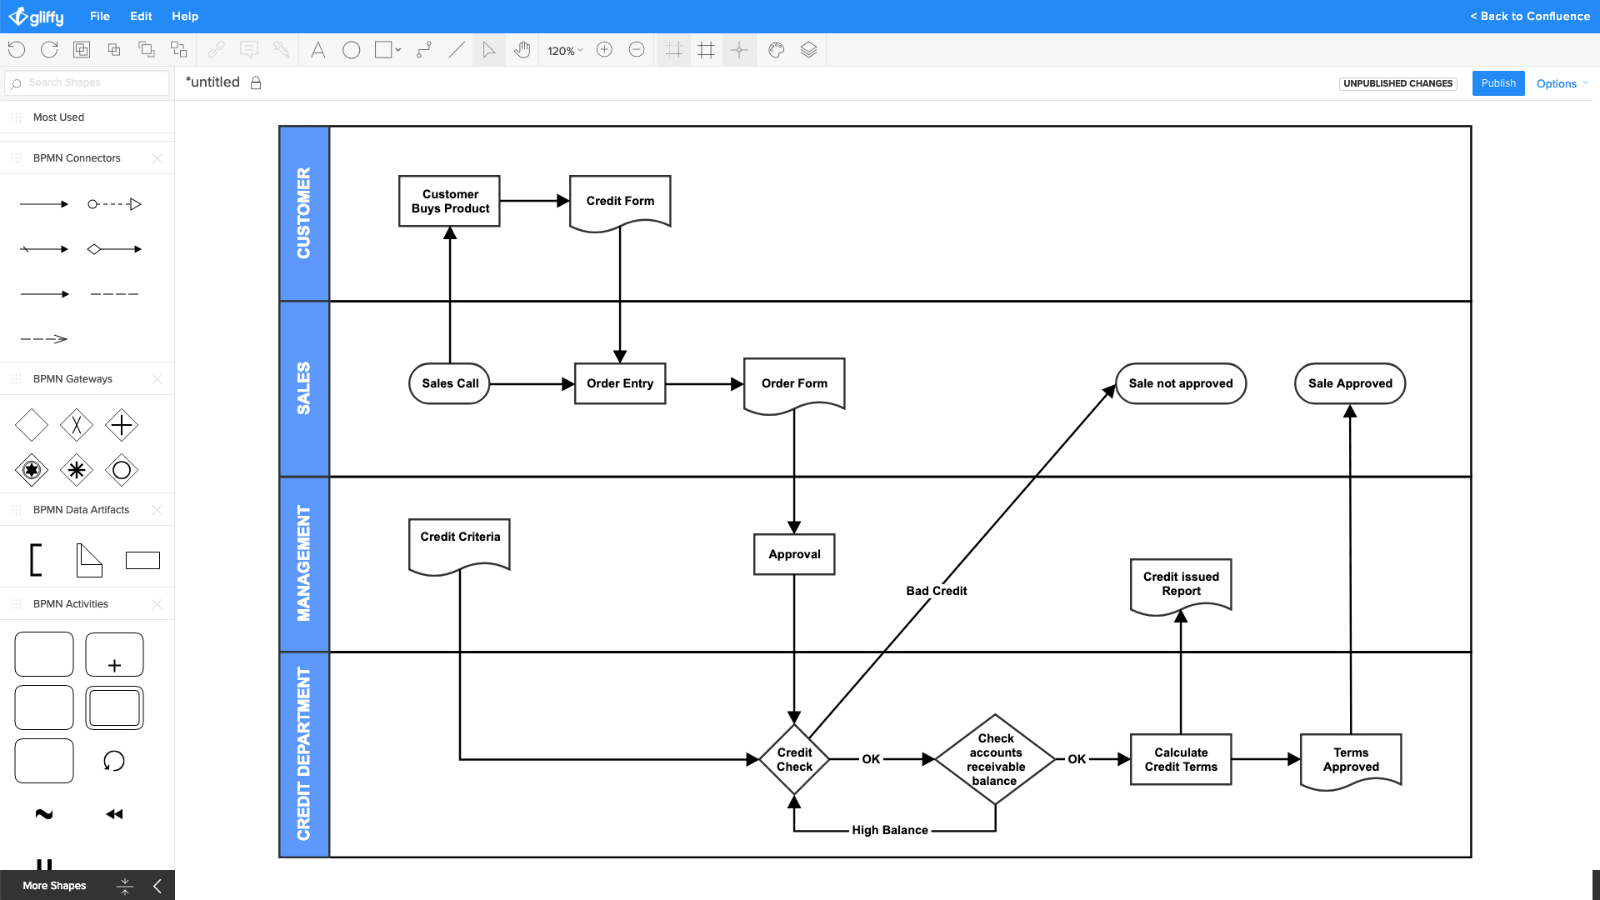 Пример диаграммы процесса транзакции в интернет-магазине (создано в Gliffy)